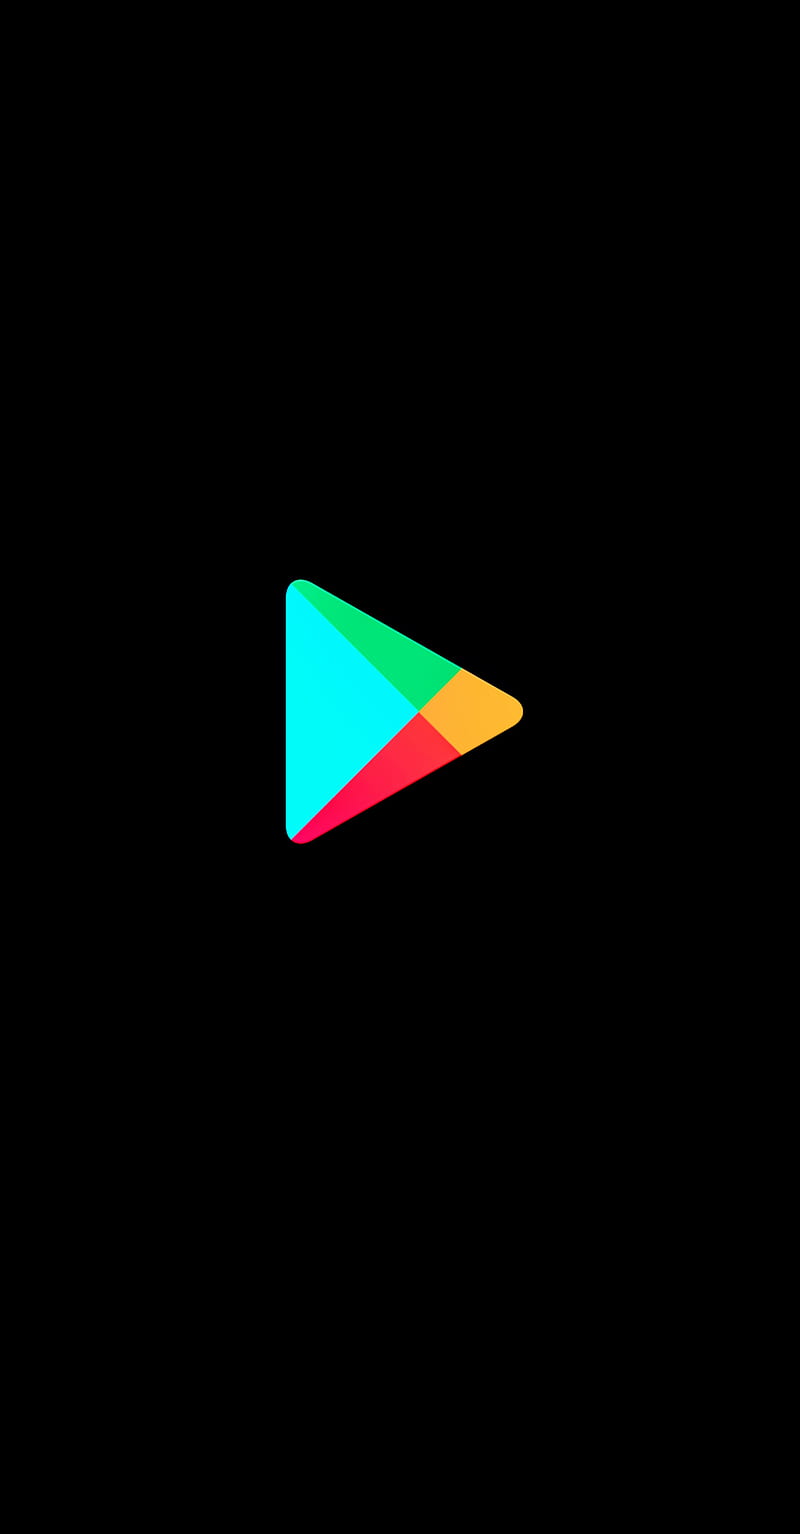 Tải ứng dụng Google Play Store màu đen để thể hiện sự khác biệt của bạn. Với ứng dụng này, bạn có thể cập nhật tất cả các ứng dụng, trò chơi hot nhất một cách nhanh chóng và tiện lợi nhất.